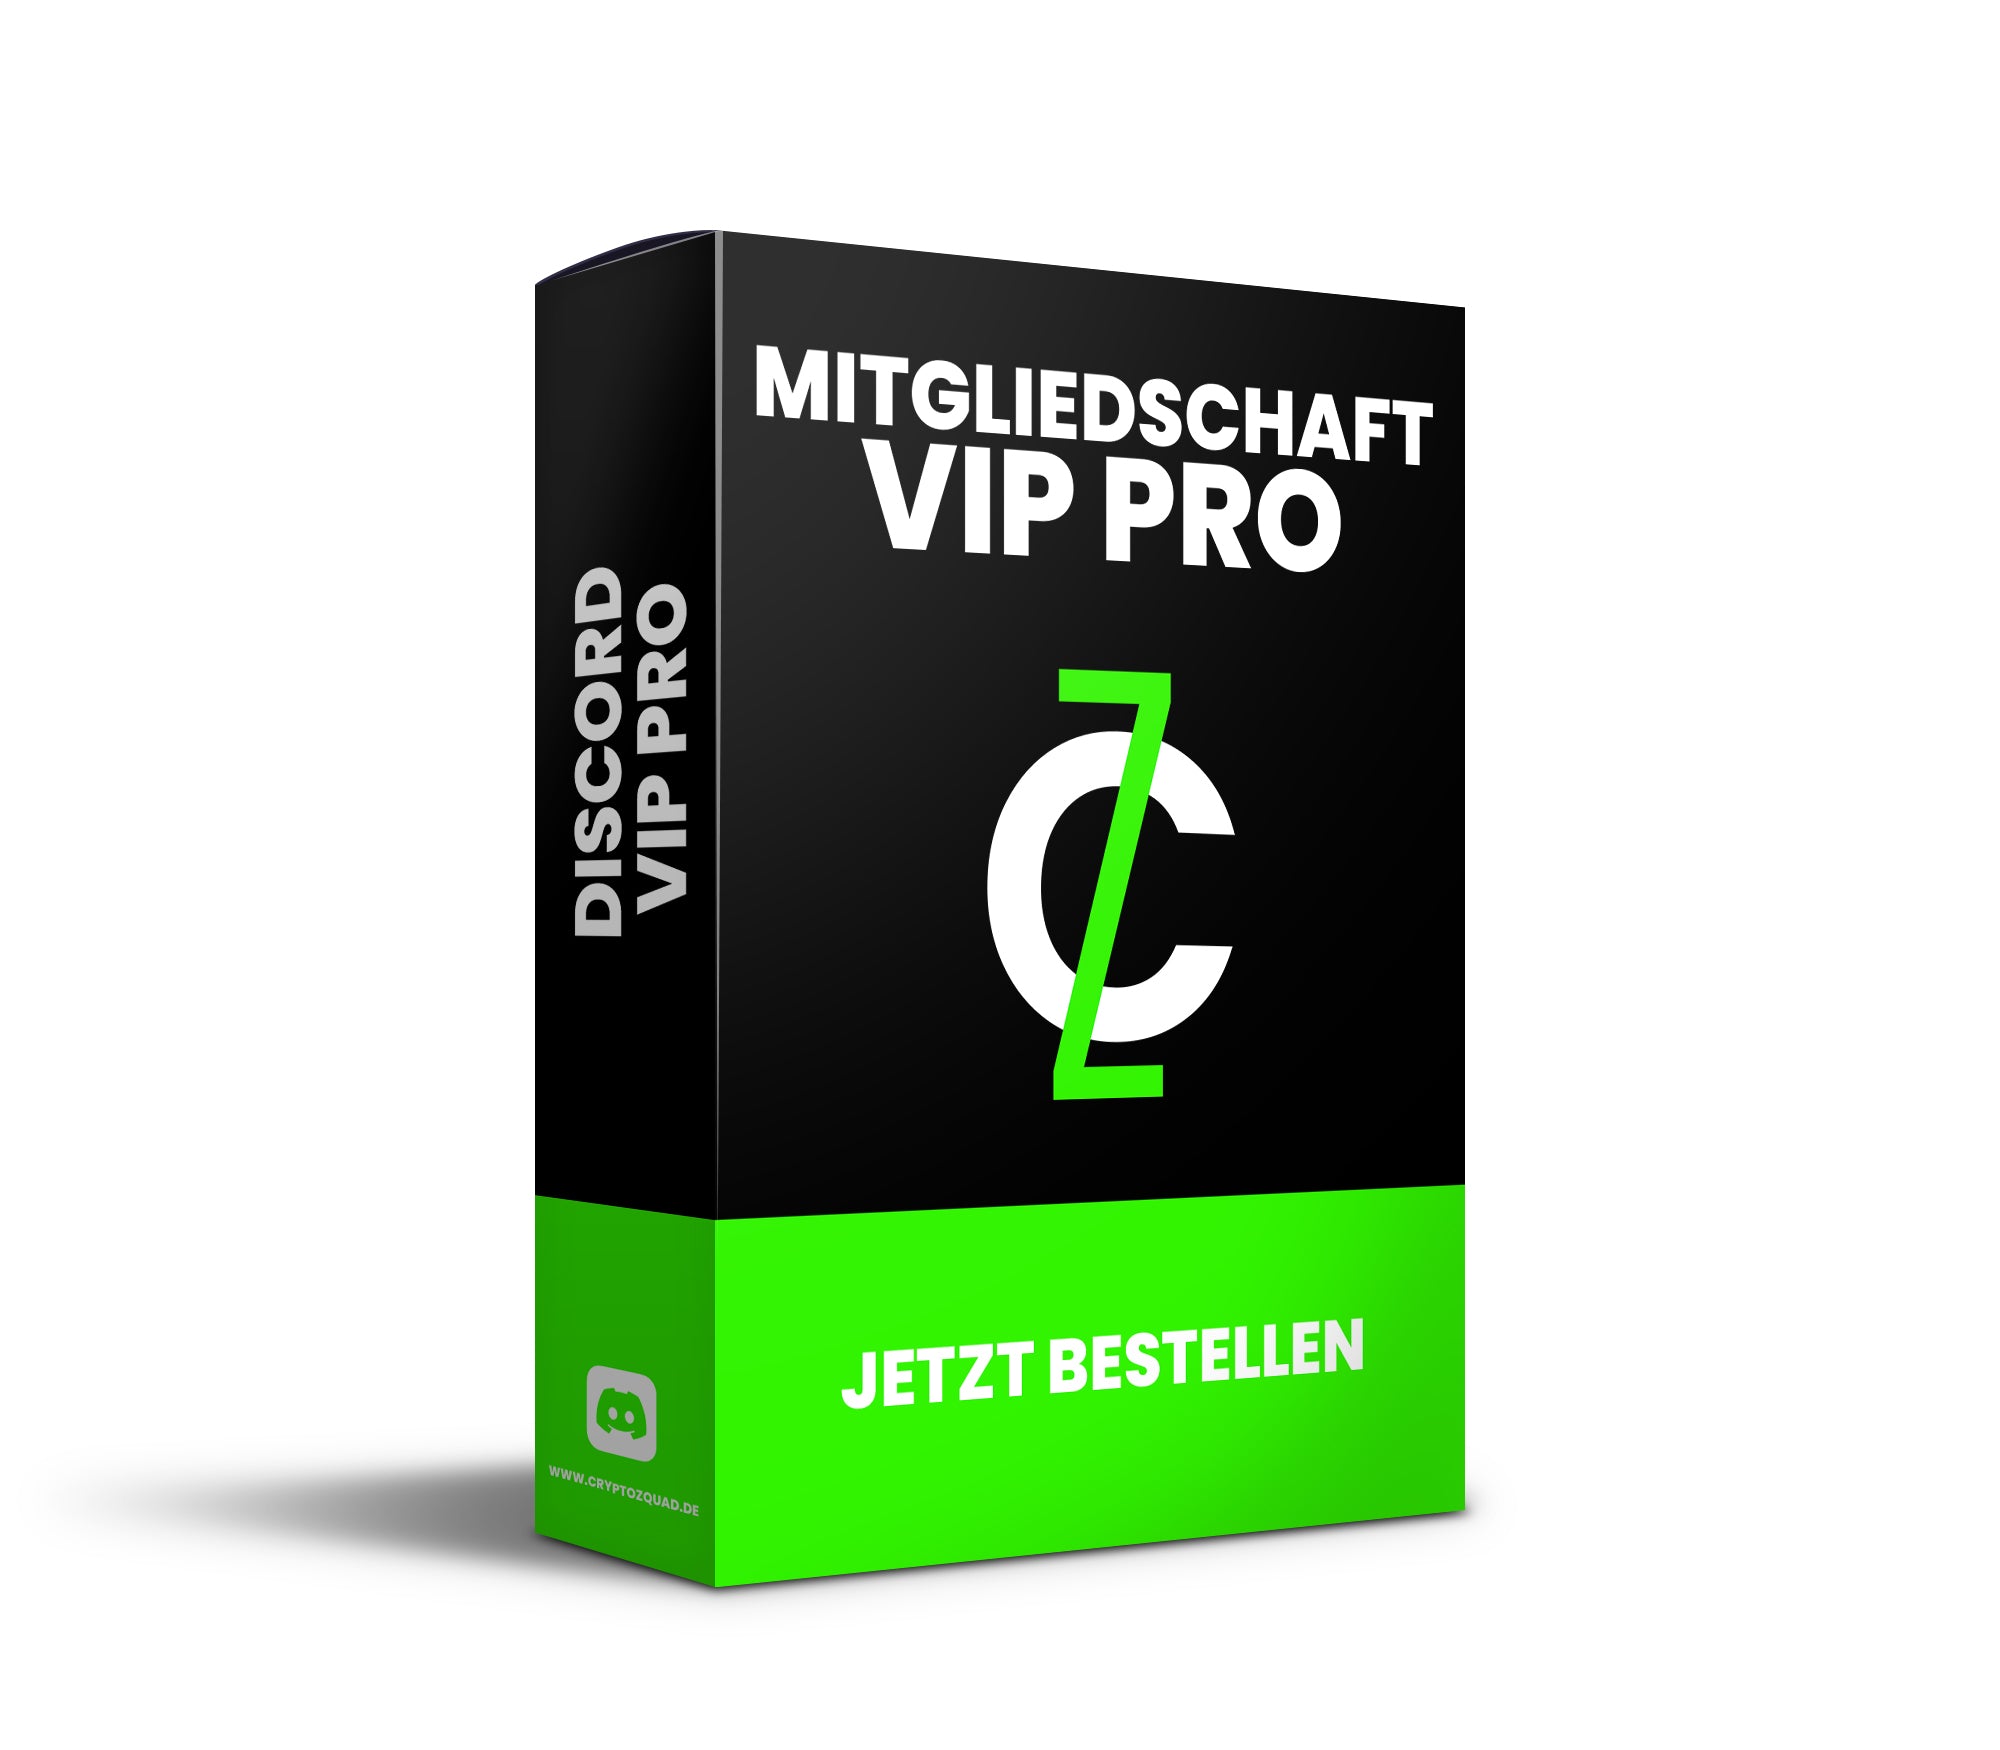 Mitgliedschaft VIP Pro